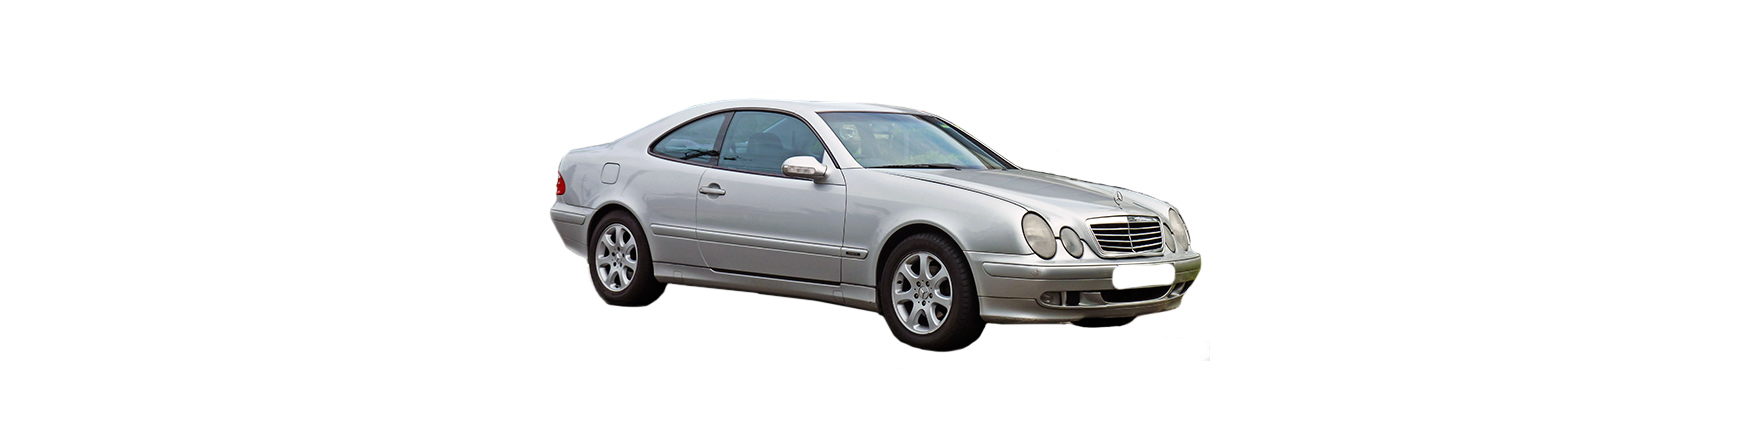 Mercedes CLK W208 de 1997 a 2003 muy baratos y con envío